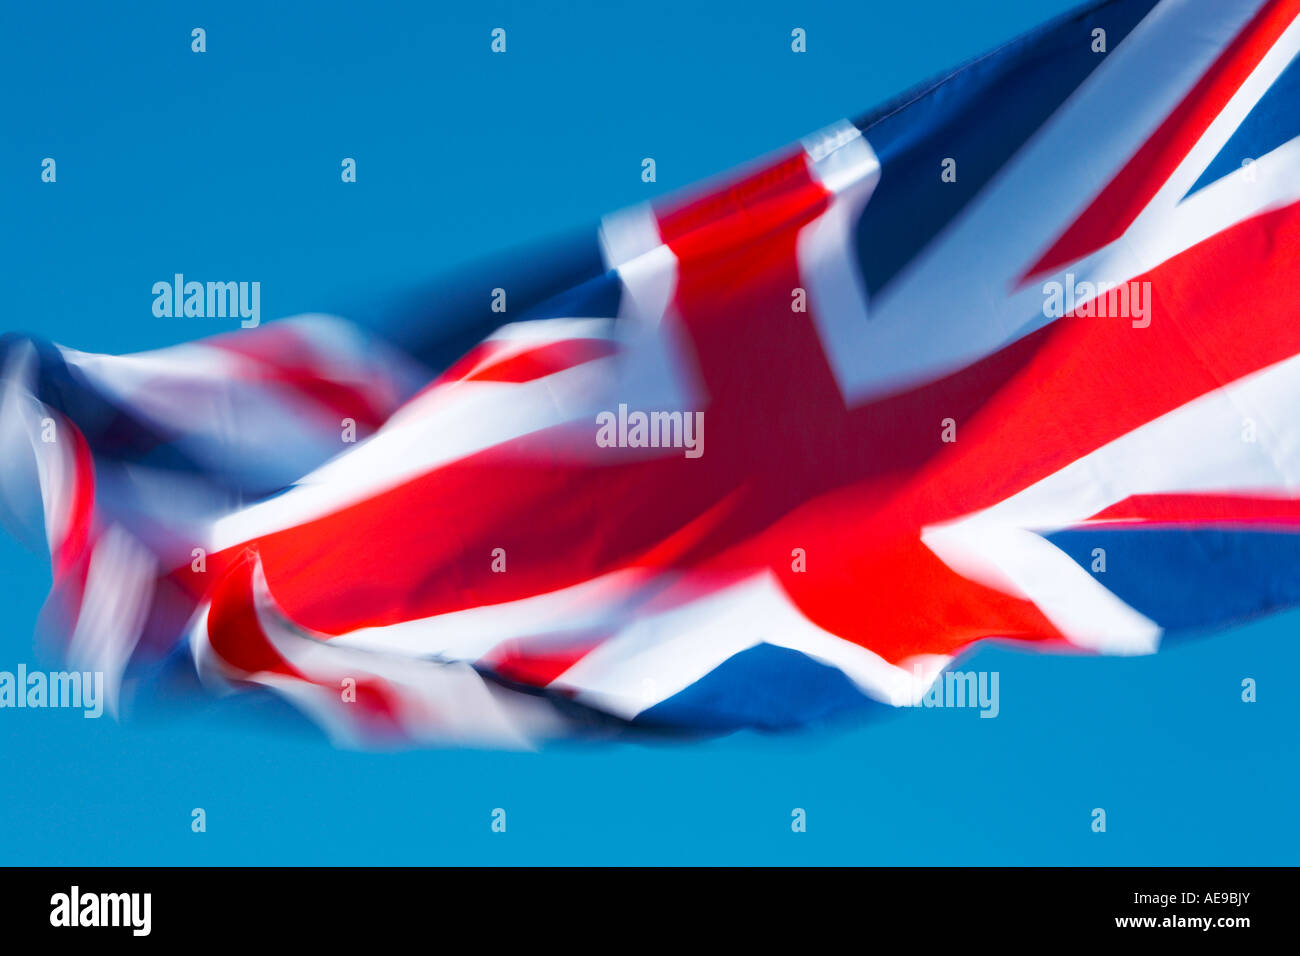 UNION JACK FLAG, ENGLAND, SCOTLAND, WALES, UK Stock Photo